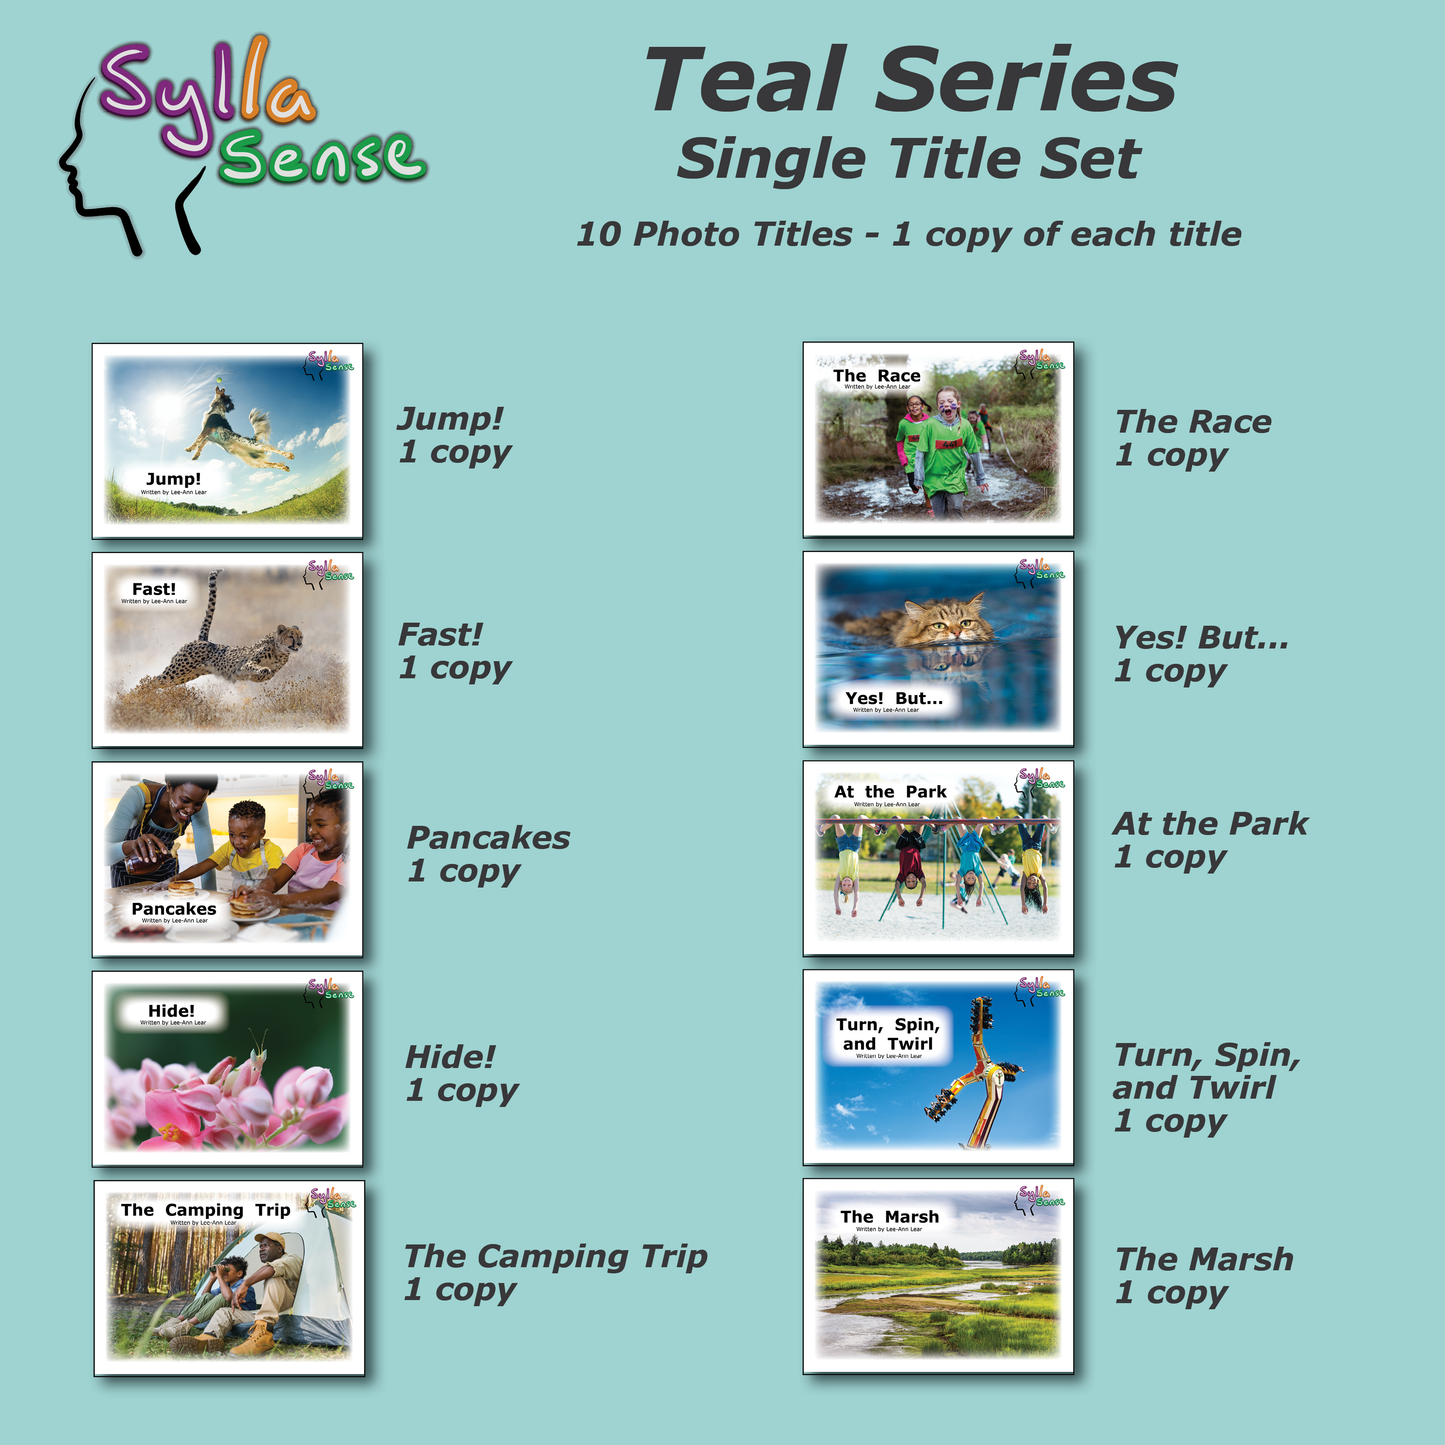 Teal Series - Single Title Set